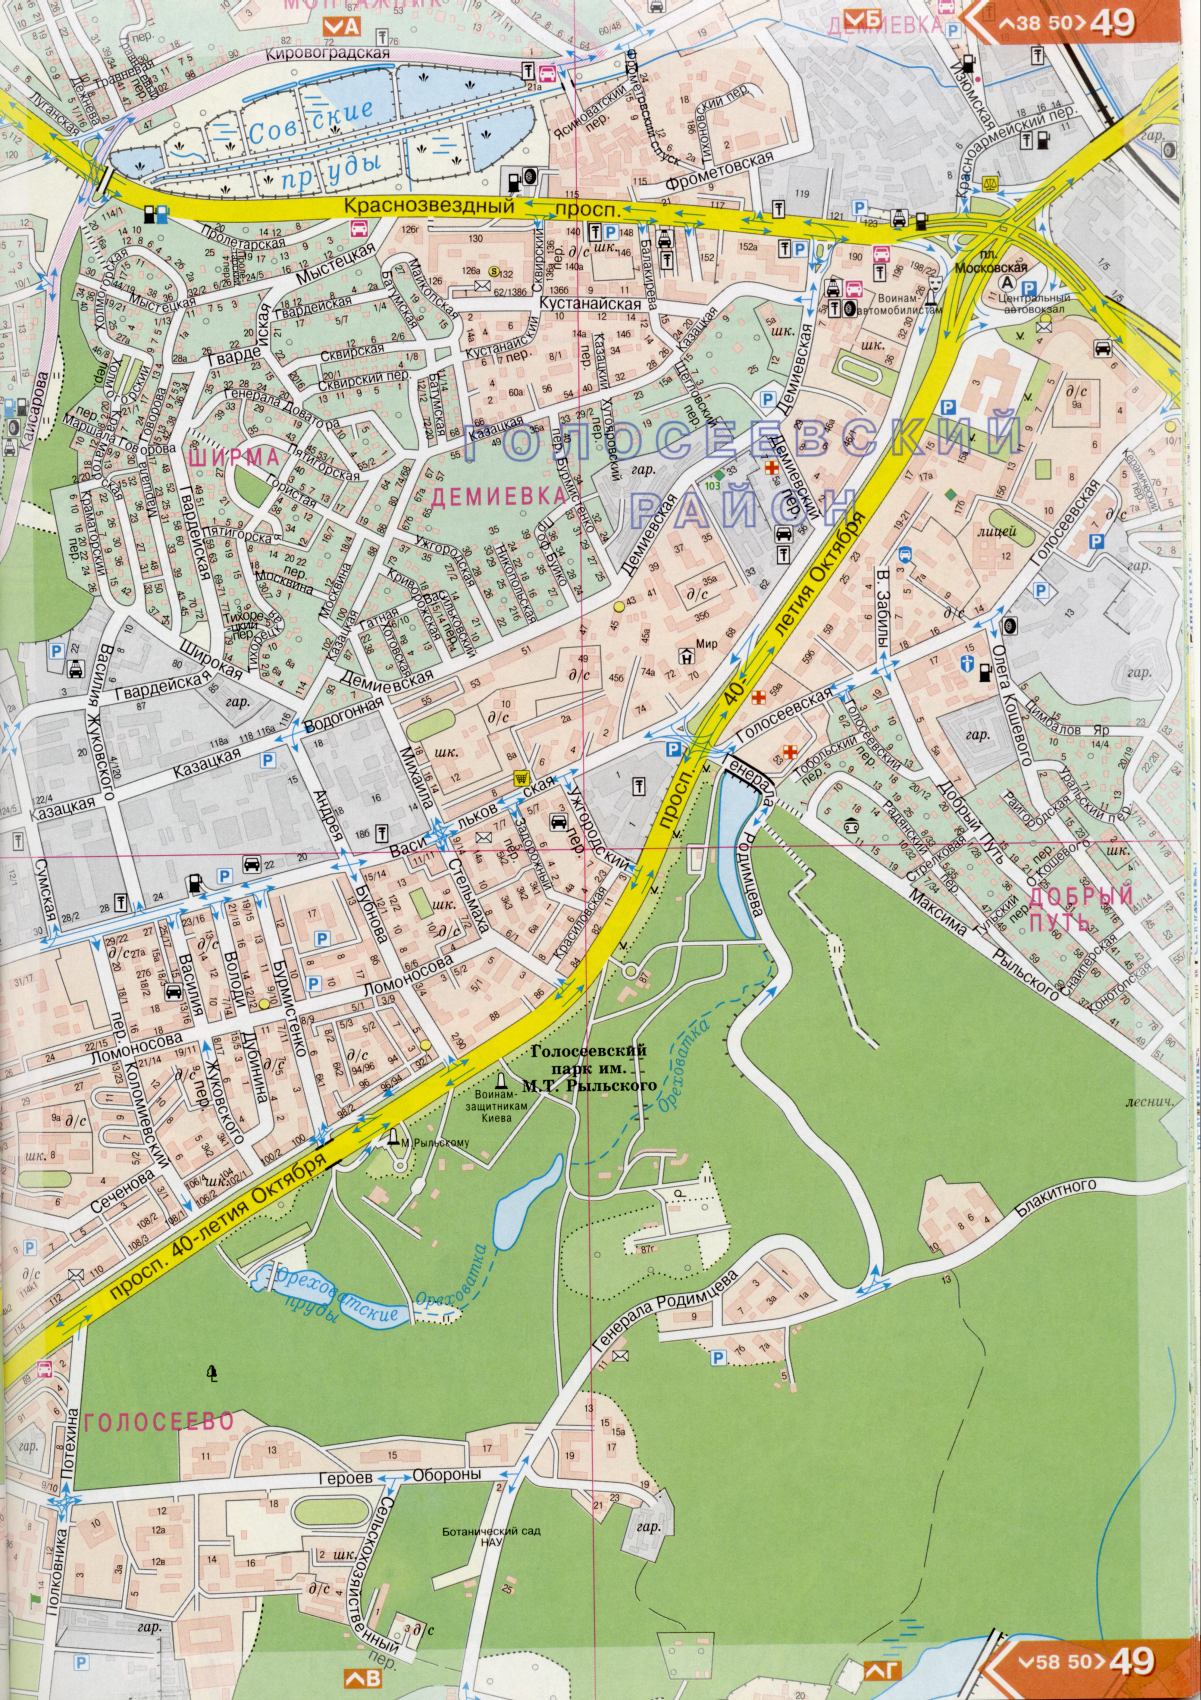 Kiew Karte Details 1cm = 150m für 45 Blatt. Karte von Kiew aus dem Atlas von Autobahnen. Laden Sie eine detaillierte Karte, E4